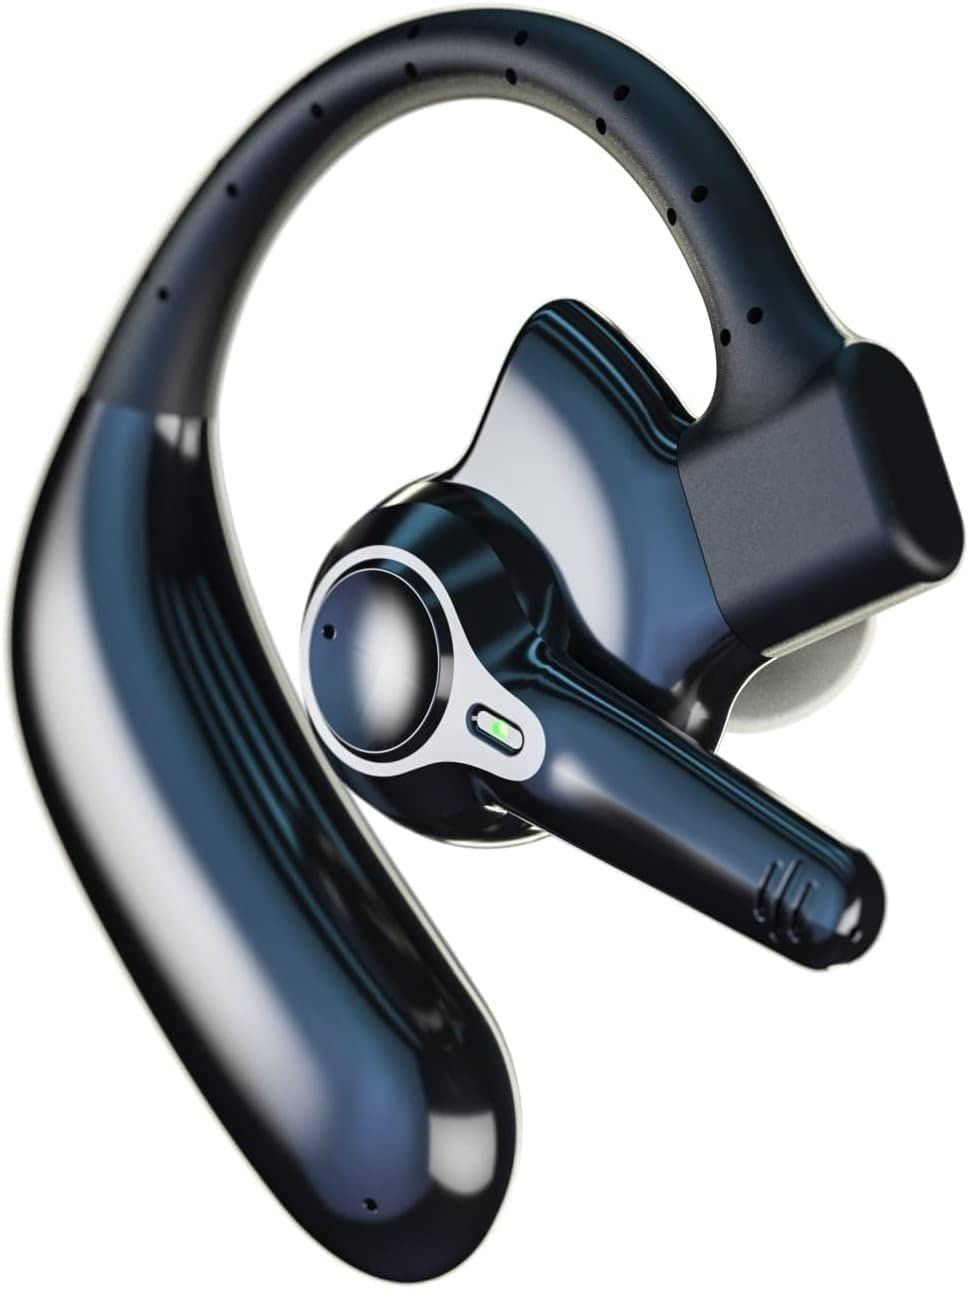 【2023新作 Bluetooth5.3 ワイヤレスヘッドセット】Bluetoothヘッドセット ワイヤレスイヤホン Bluetoothイヤホン ブルートゥースイヤホン ビジネスヘッドセット 耳掛け型 片耳イヤホン 片耳ヘッドセット フィット感抜群